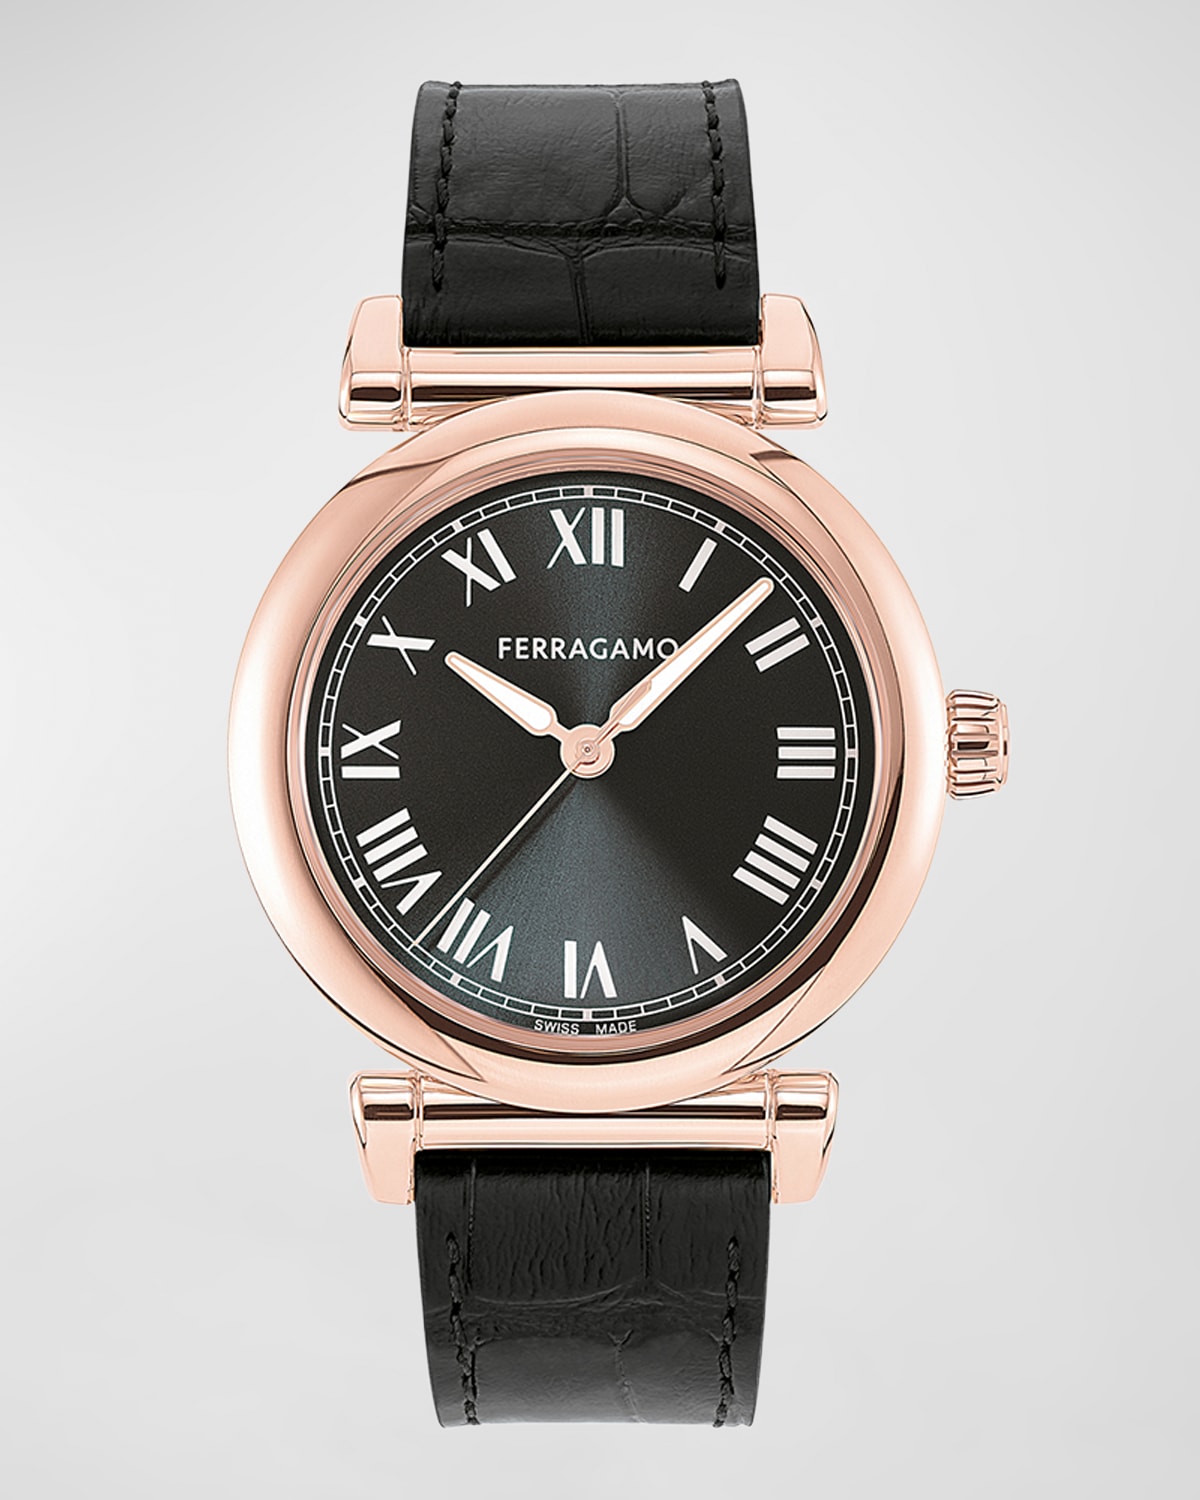 36mm Ferragamo Allure Watch with Calf Leather Strap, Black